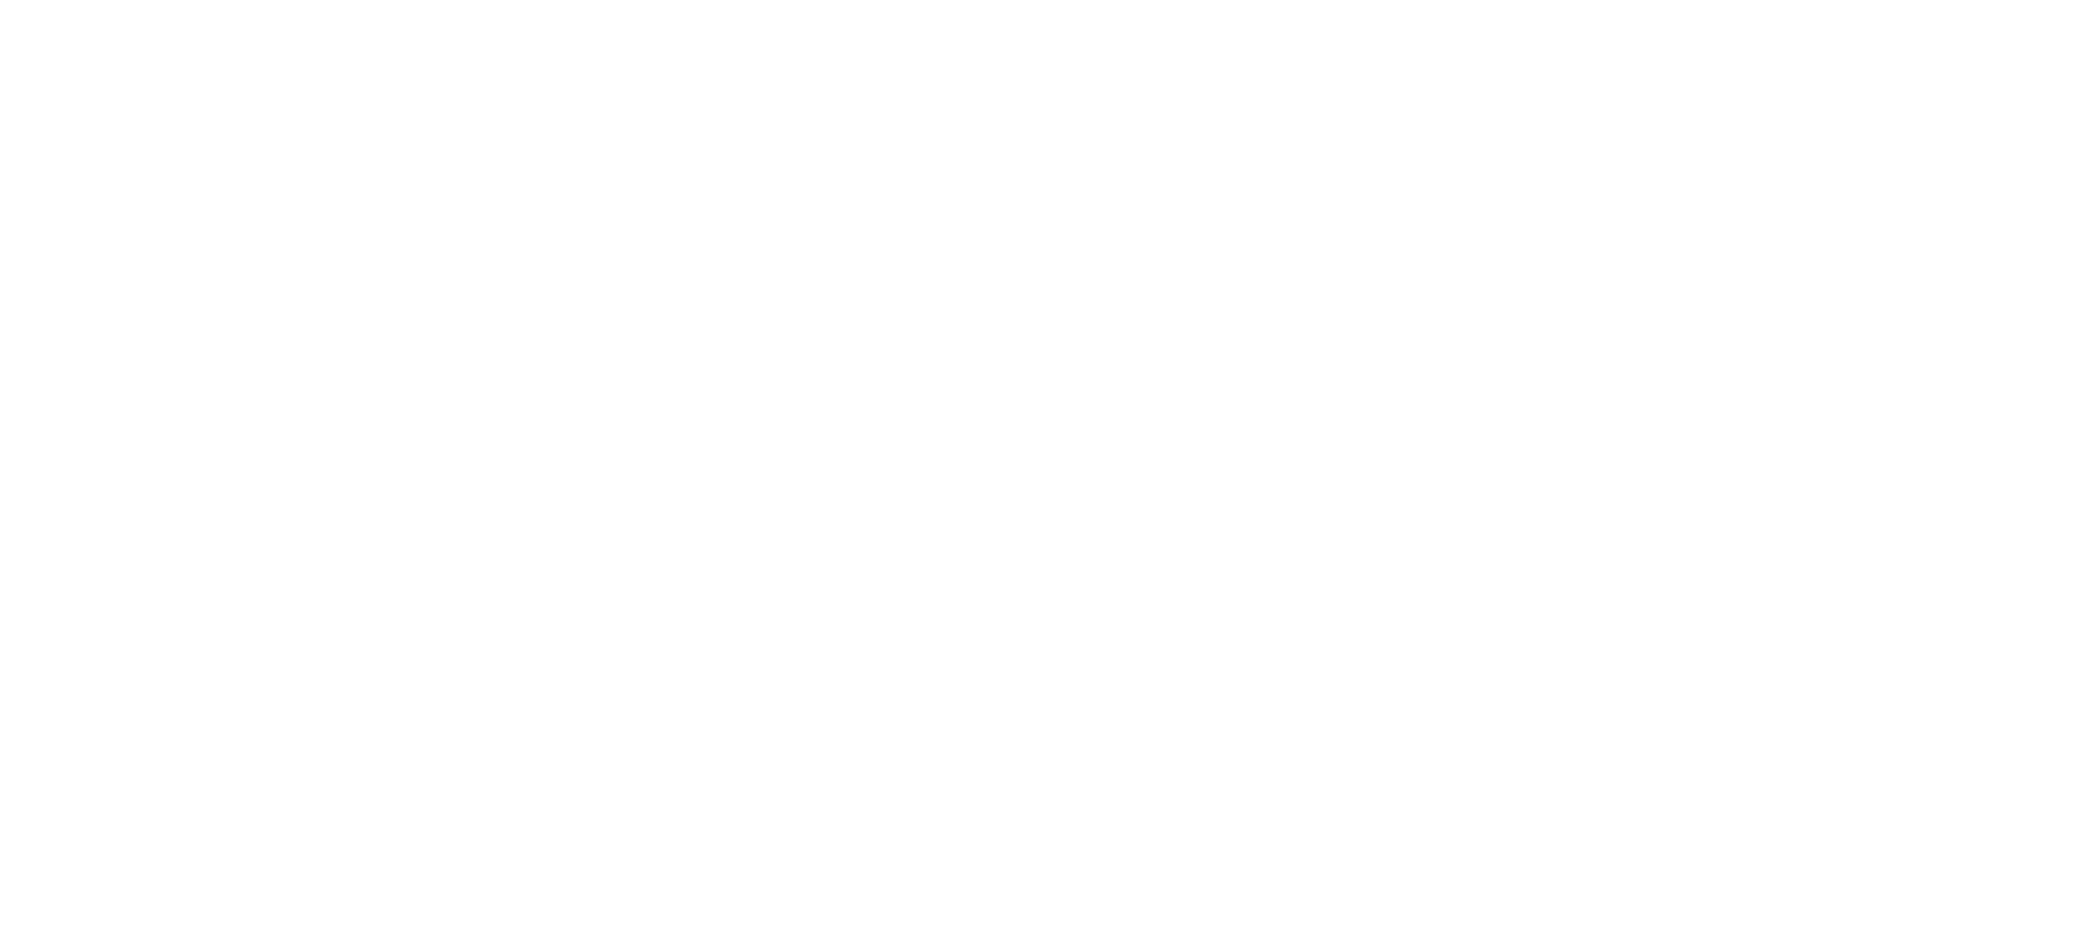 Little Big Soldier logo